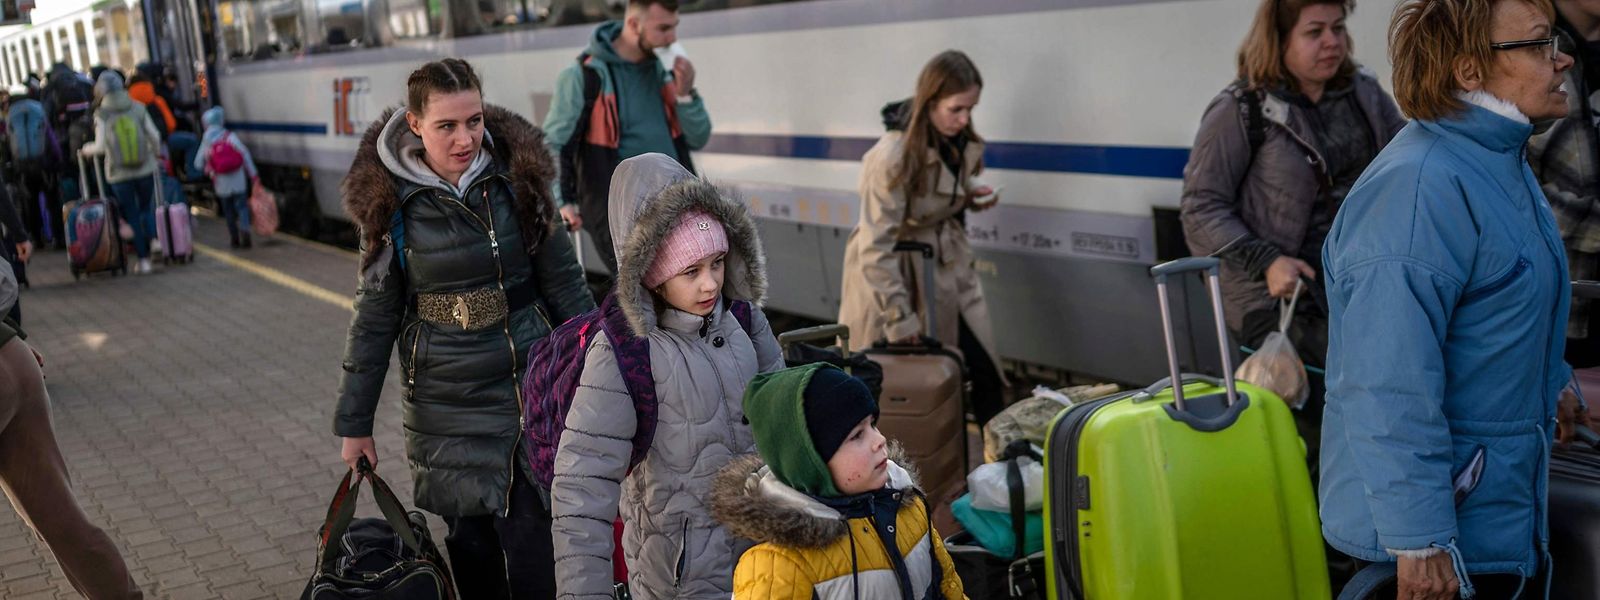 Des infrastructures sont recherchées pour l'accueil des réfugiés au Luxembourg.